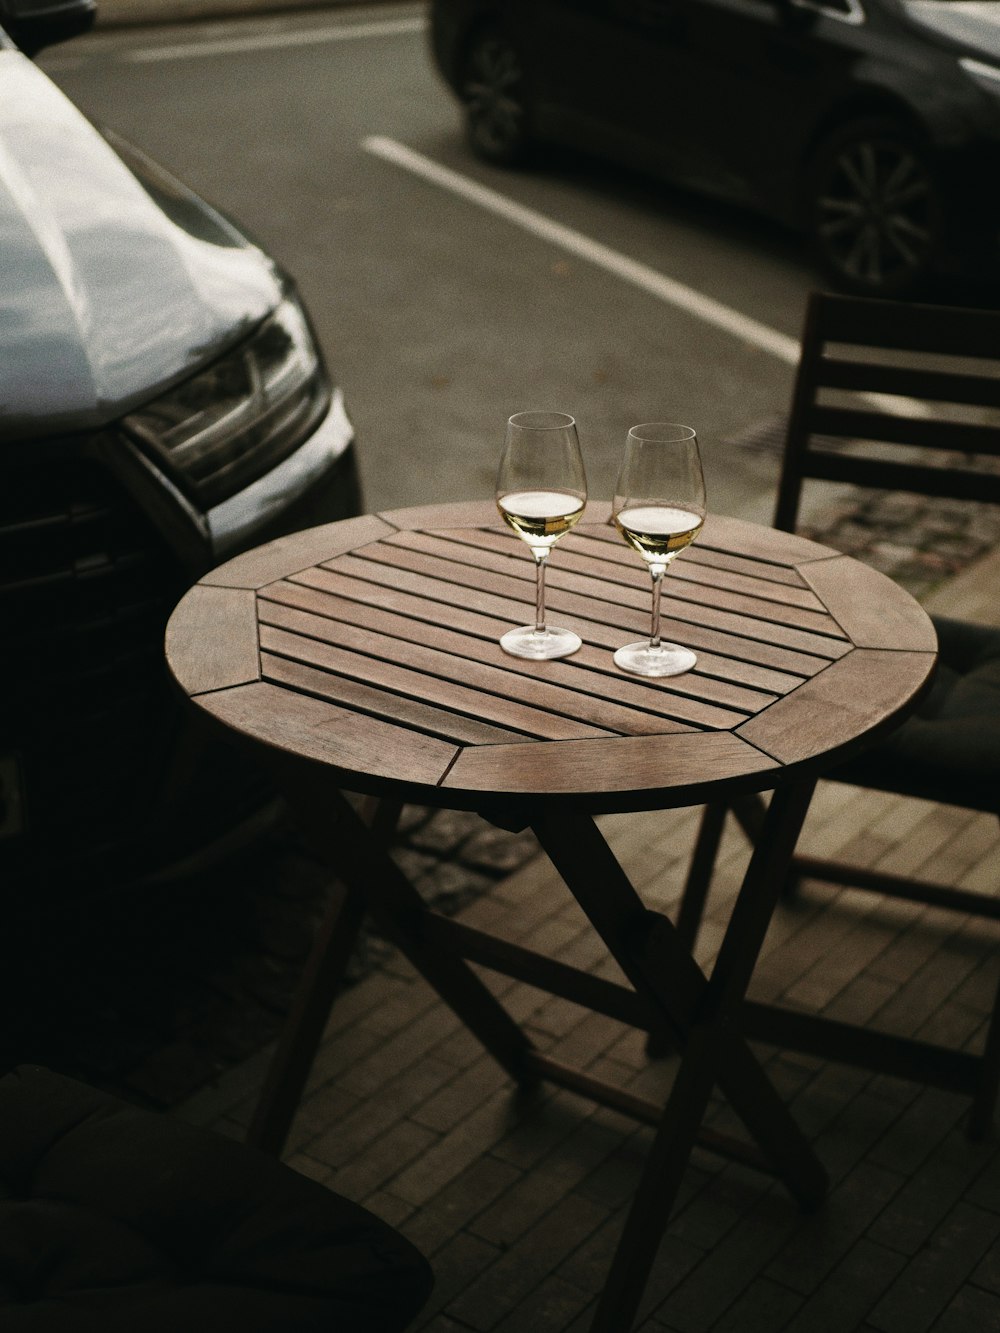 Deux verres de vin sont assis sur une table